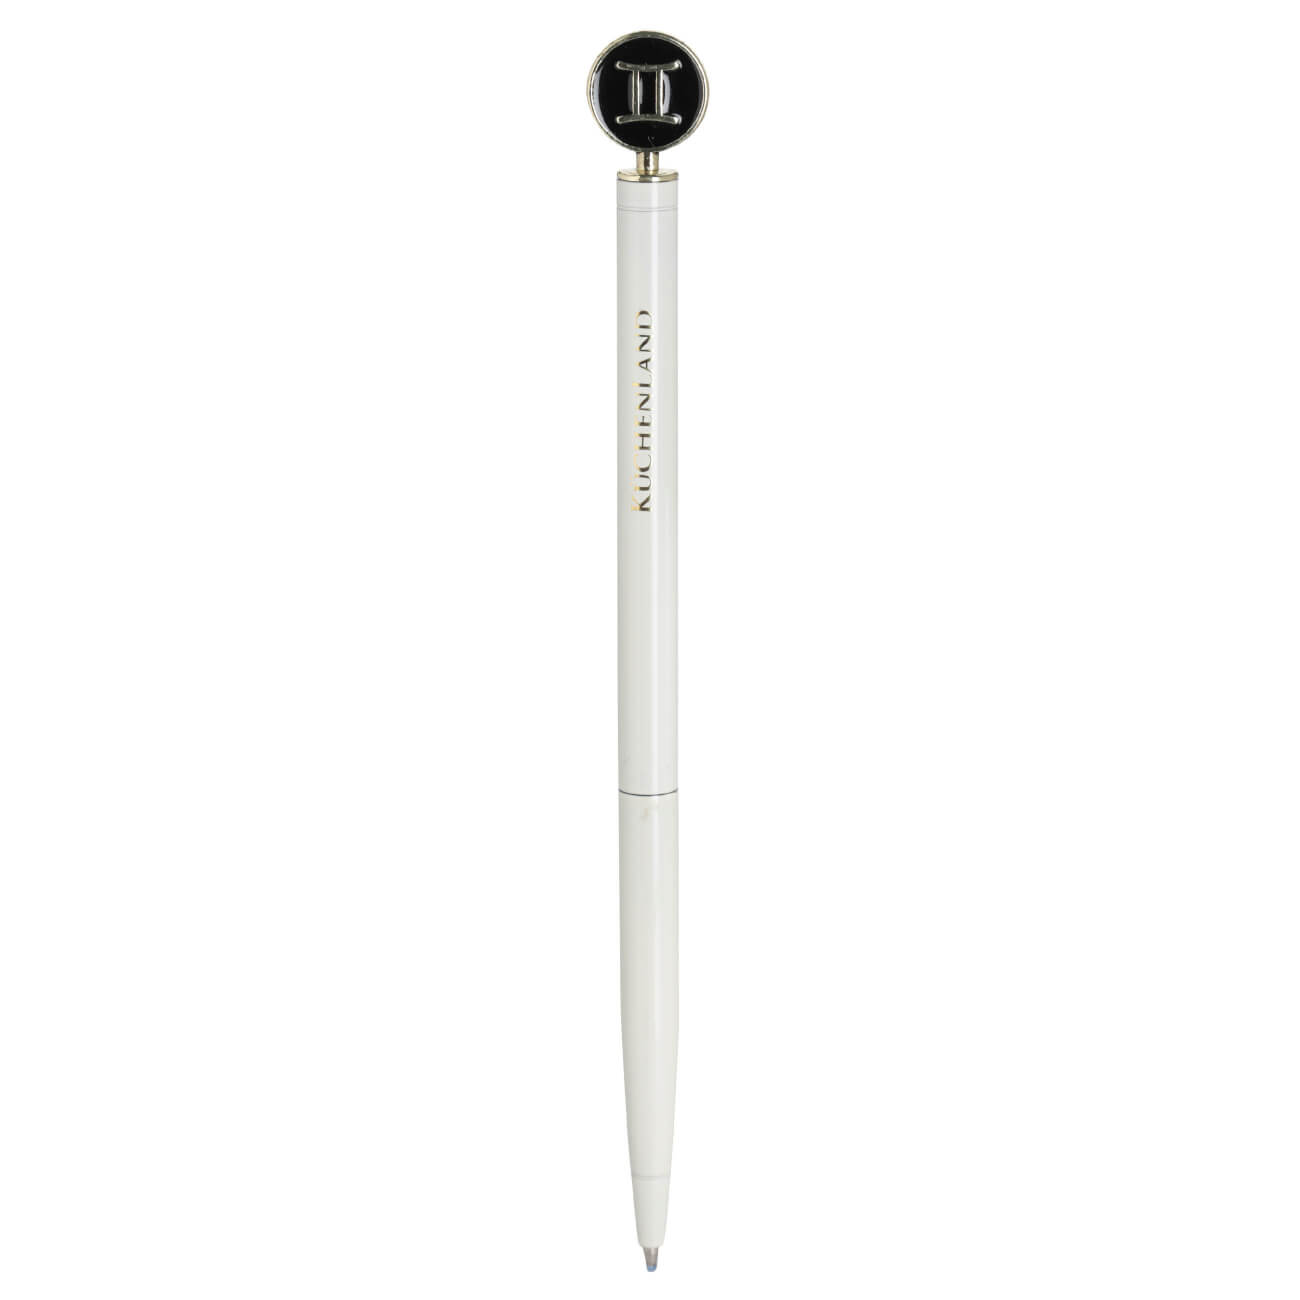 Ручка шариковая, 15 см, с фигуркой, сталь, молочно-золотистая, Близнецы, Zodiac dueto gun ручка стилус